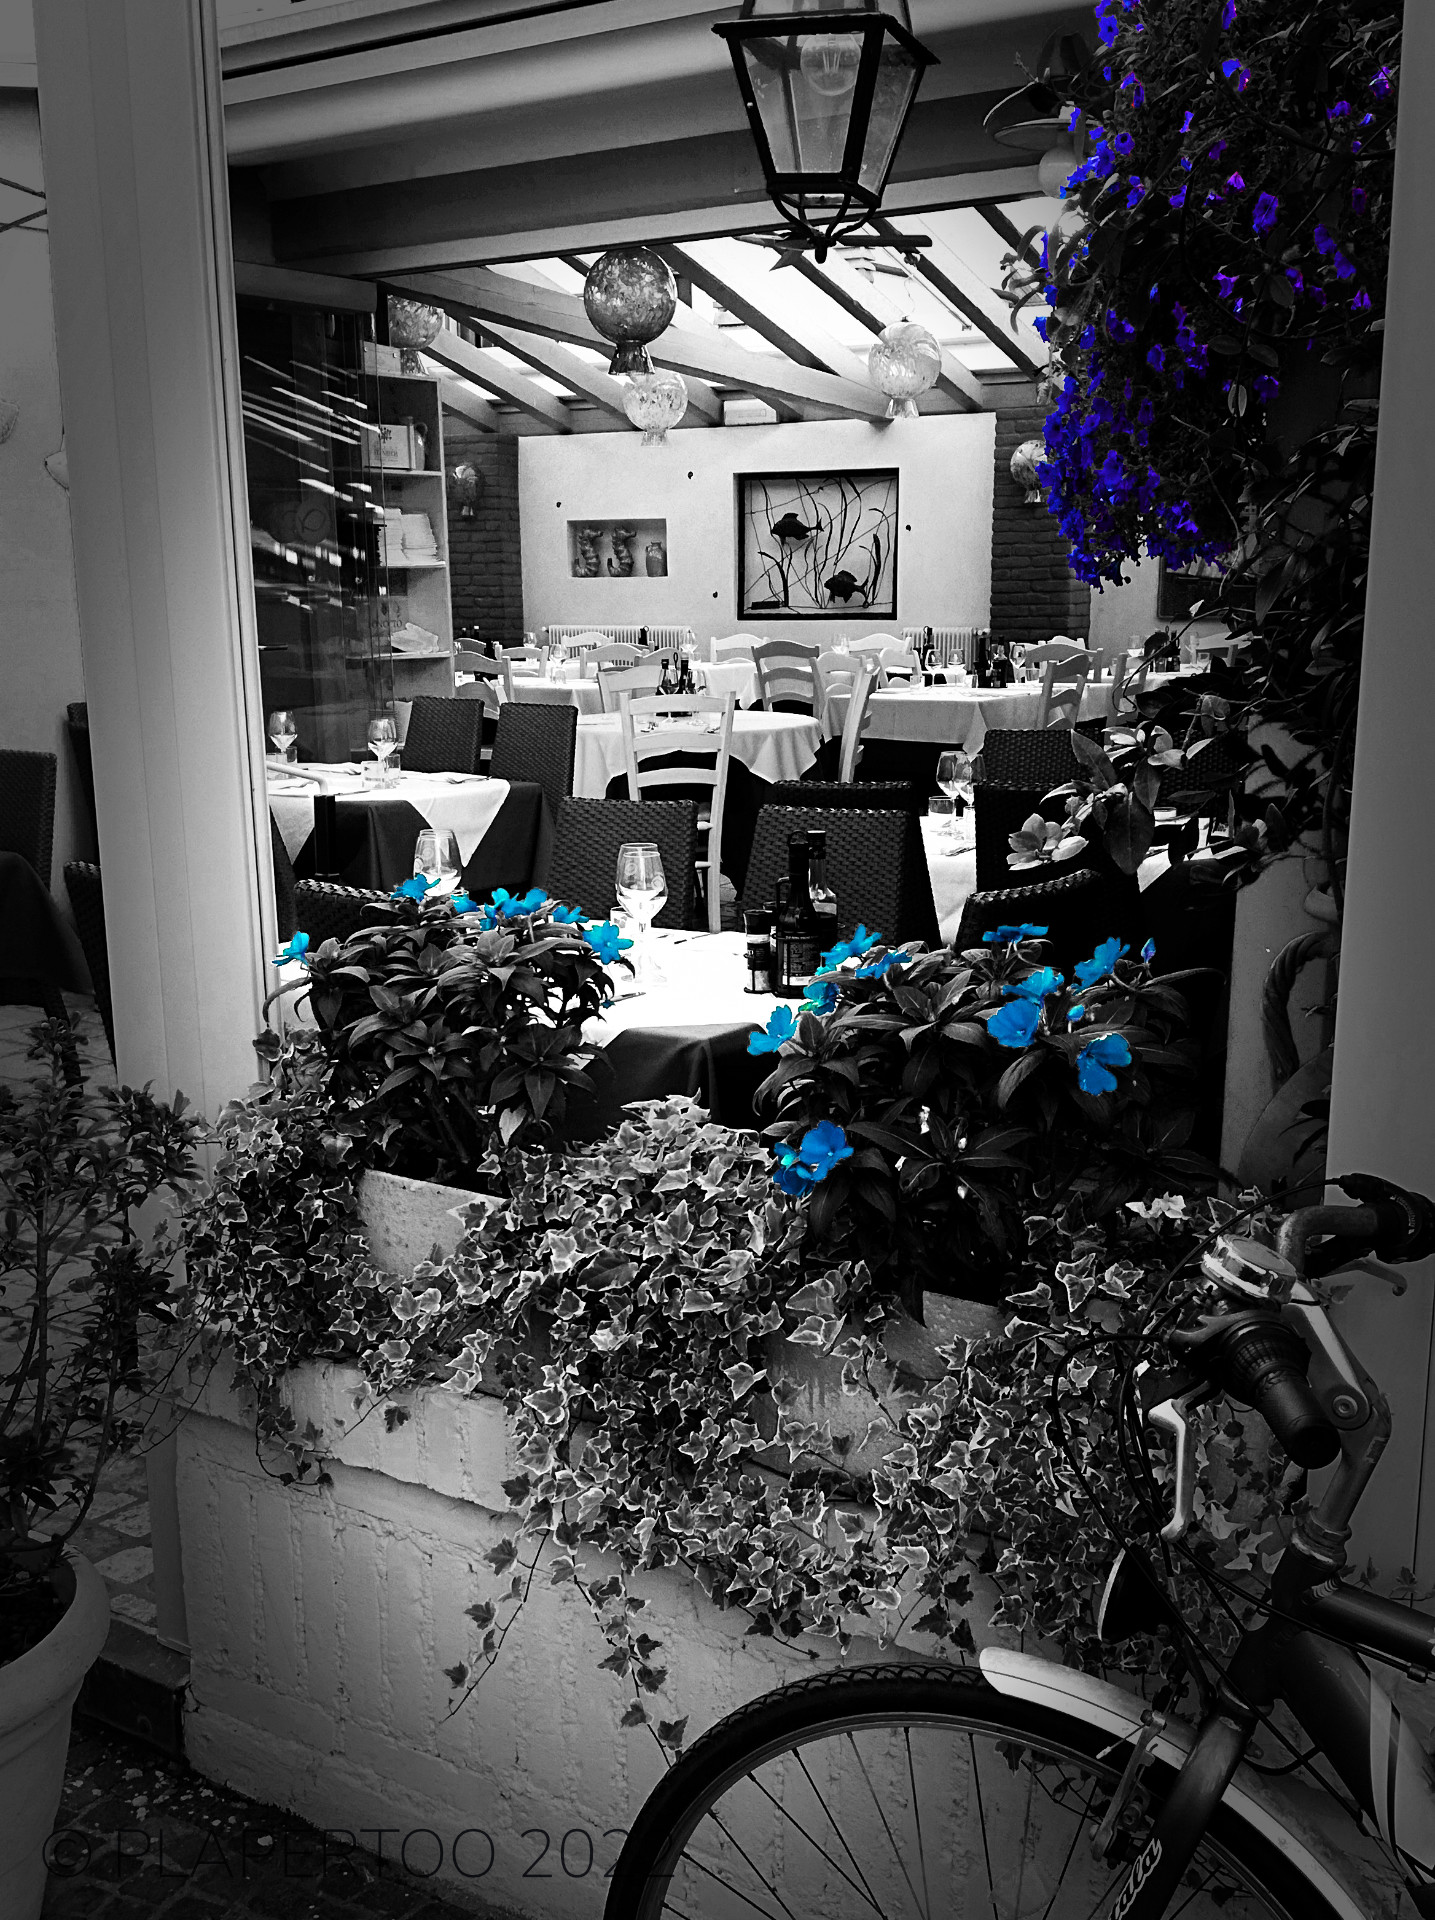 Italienisches Cafe in schwarzweis mit blauen Blumen